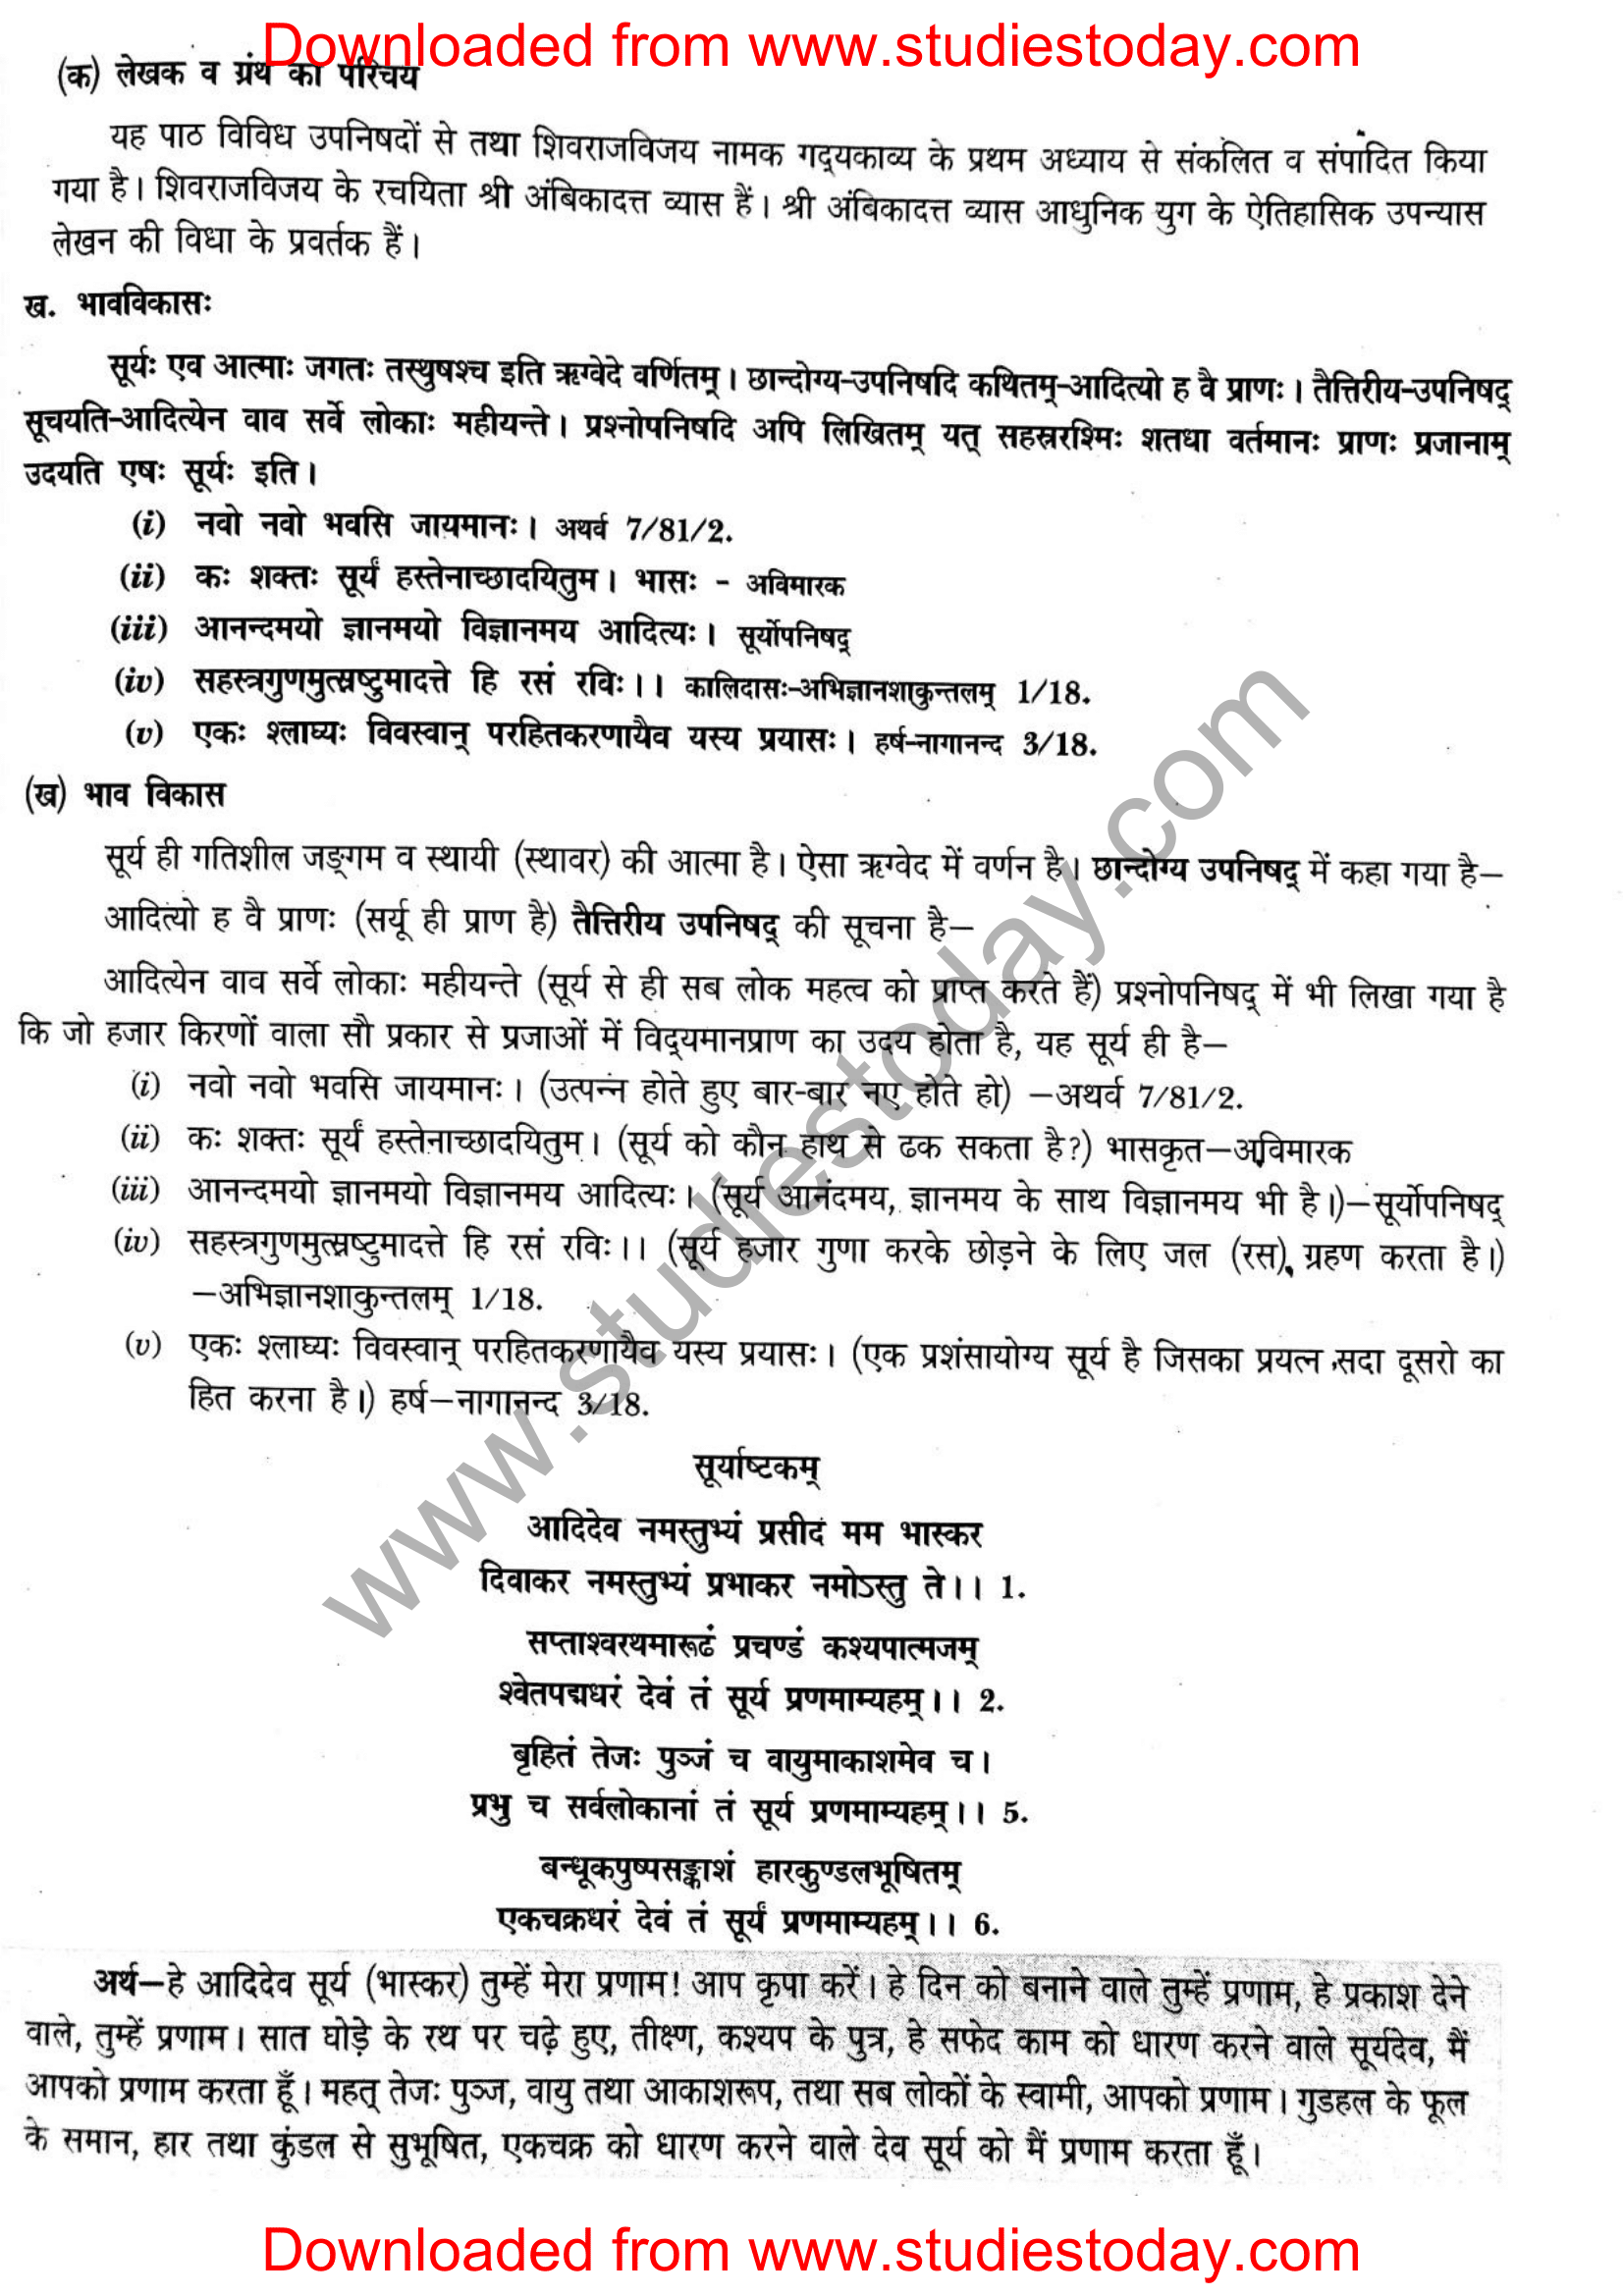 ncert-solutions-class-12-sanskrit-ritikia-chapter-2-08